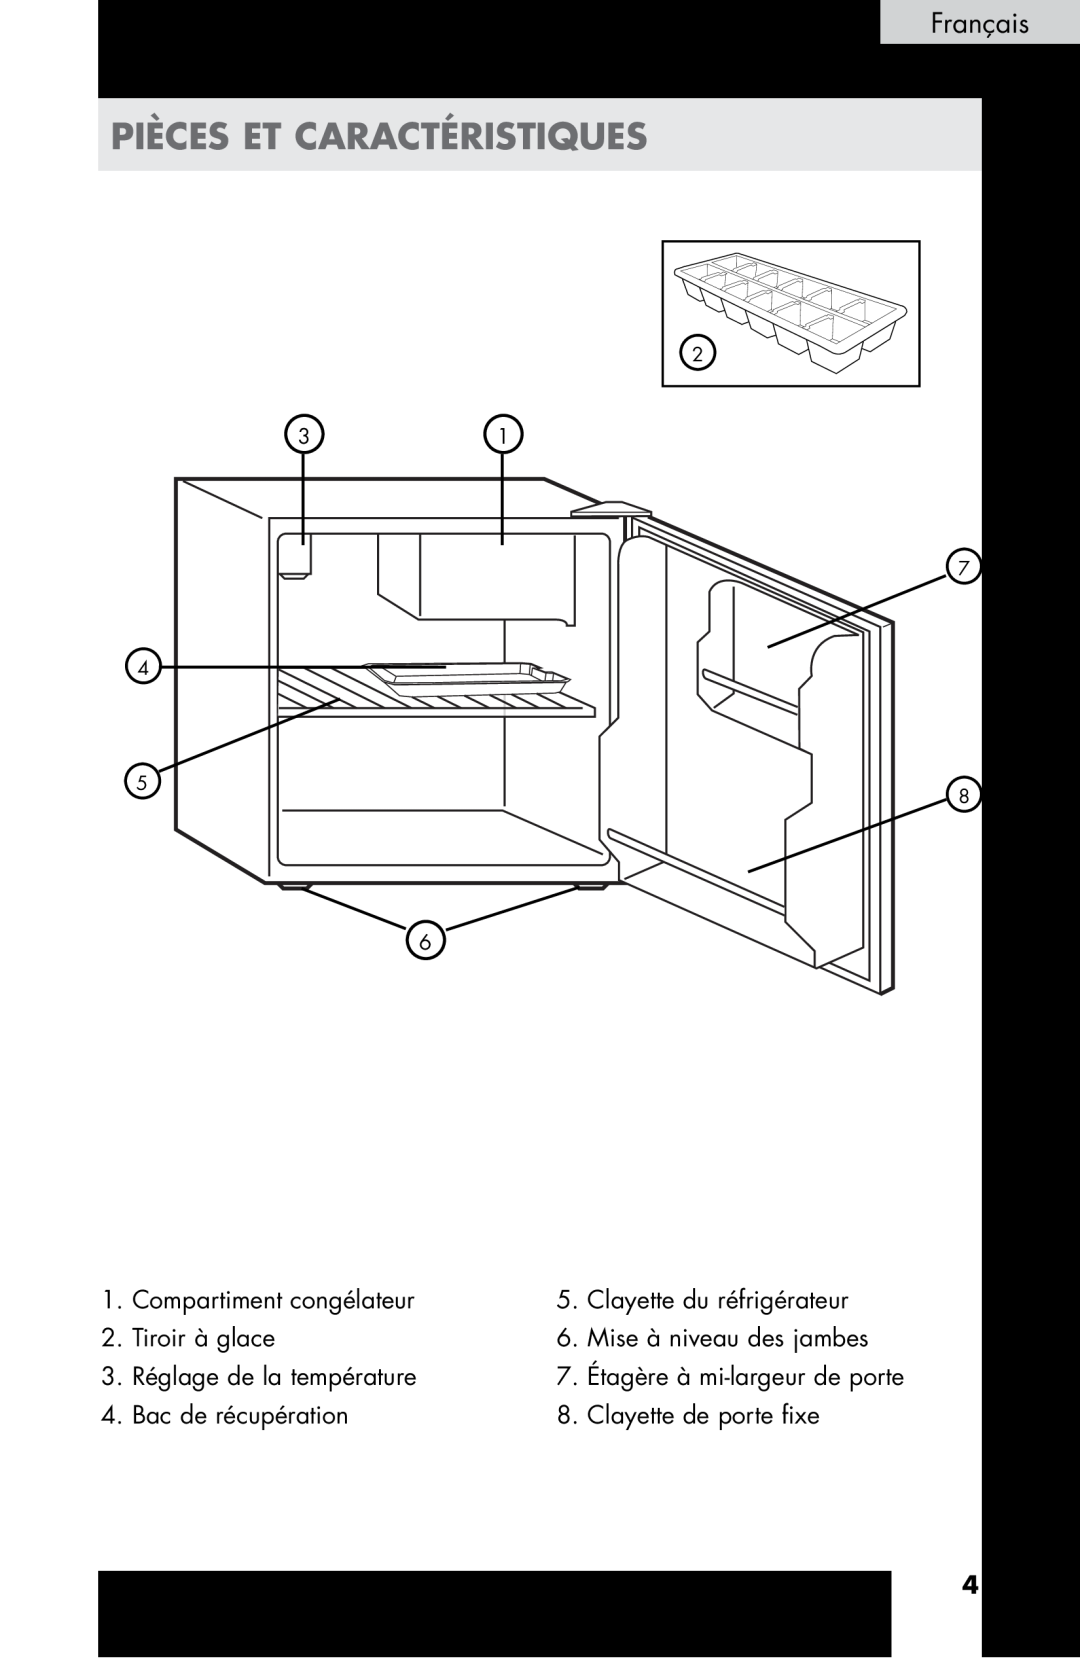 Haier HC17SF15RW Pièces et caractéristiques, Compartiment congélateur, Clayette du réfrigérateur, Tiroir à glace 